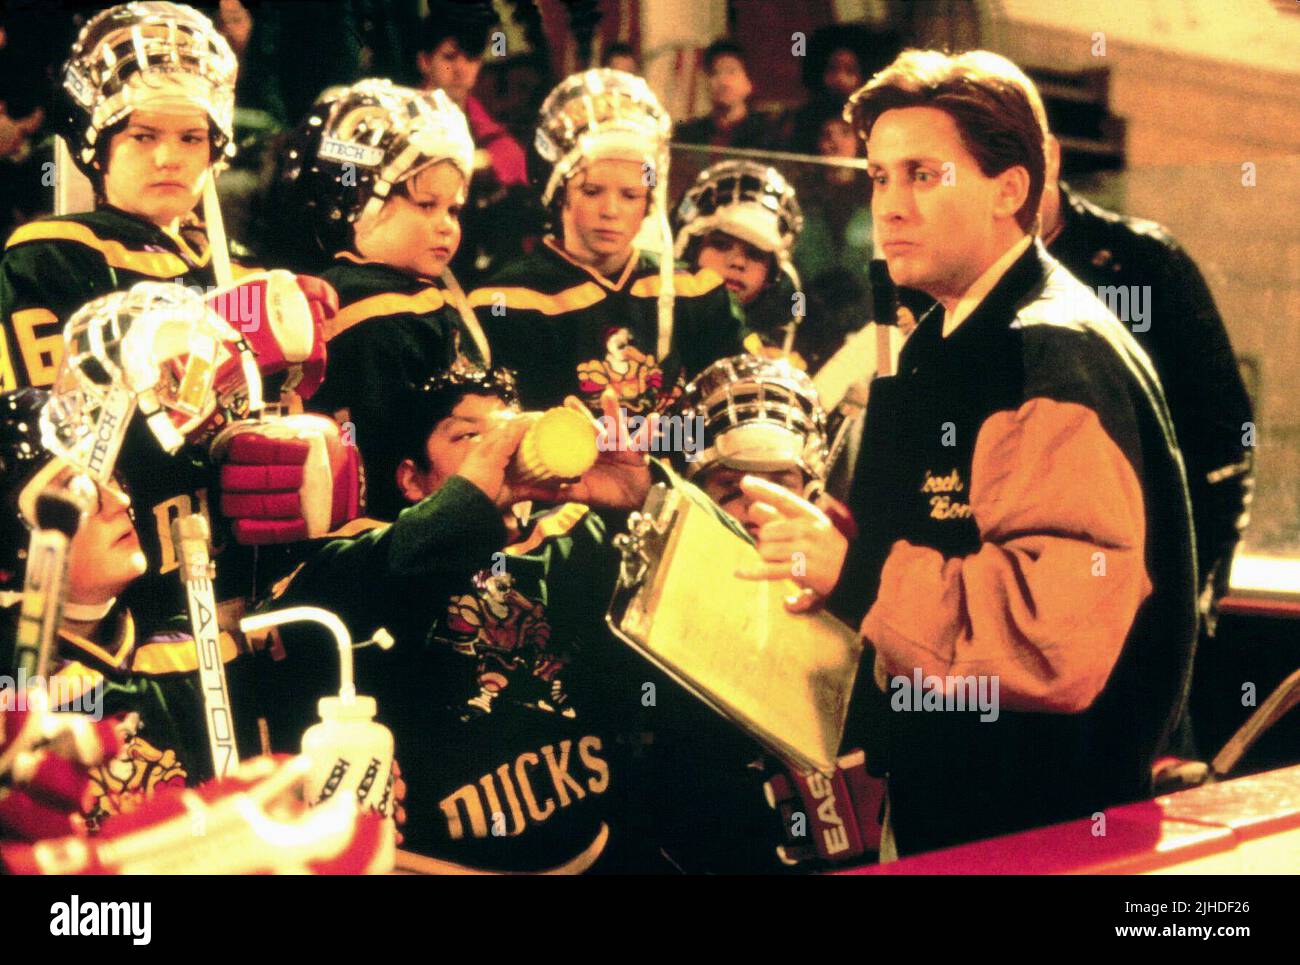 The Mighty Ducks' — Photos – Hollywood Life